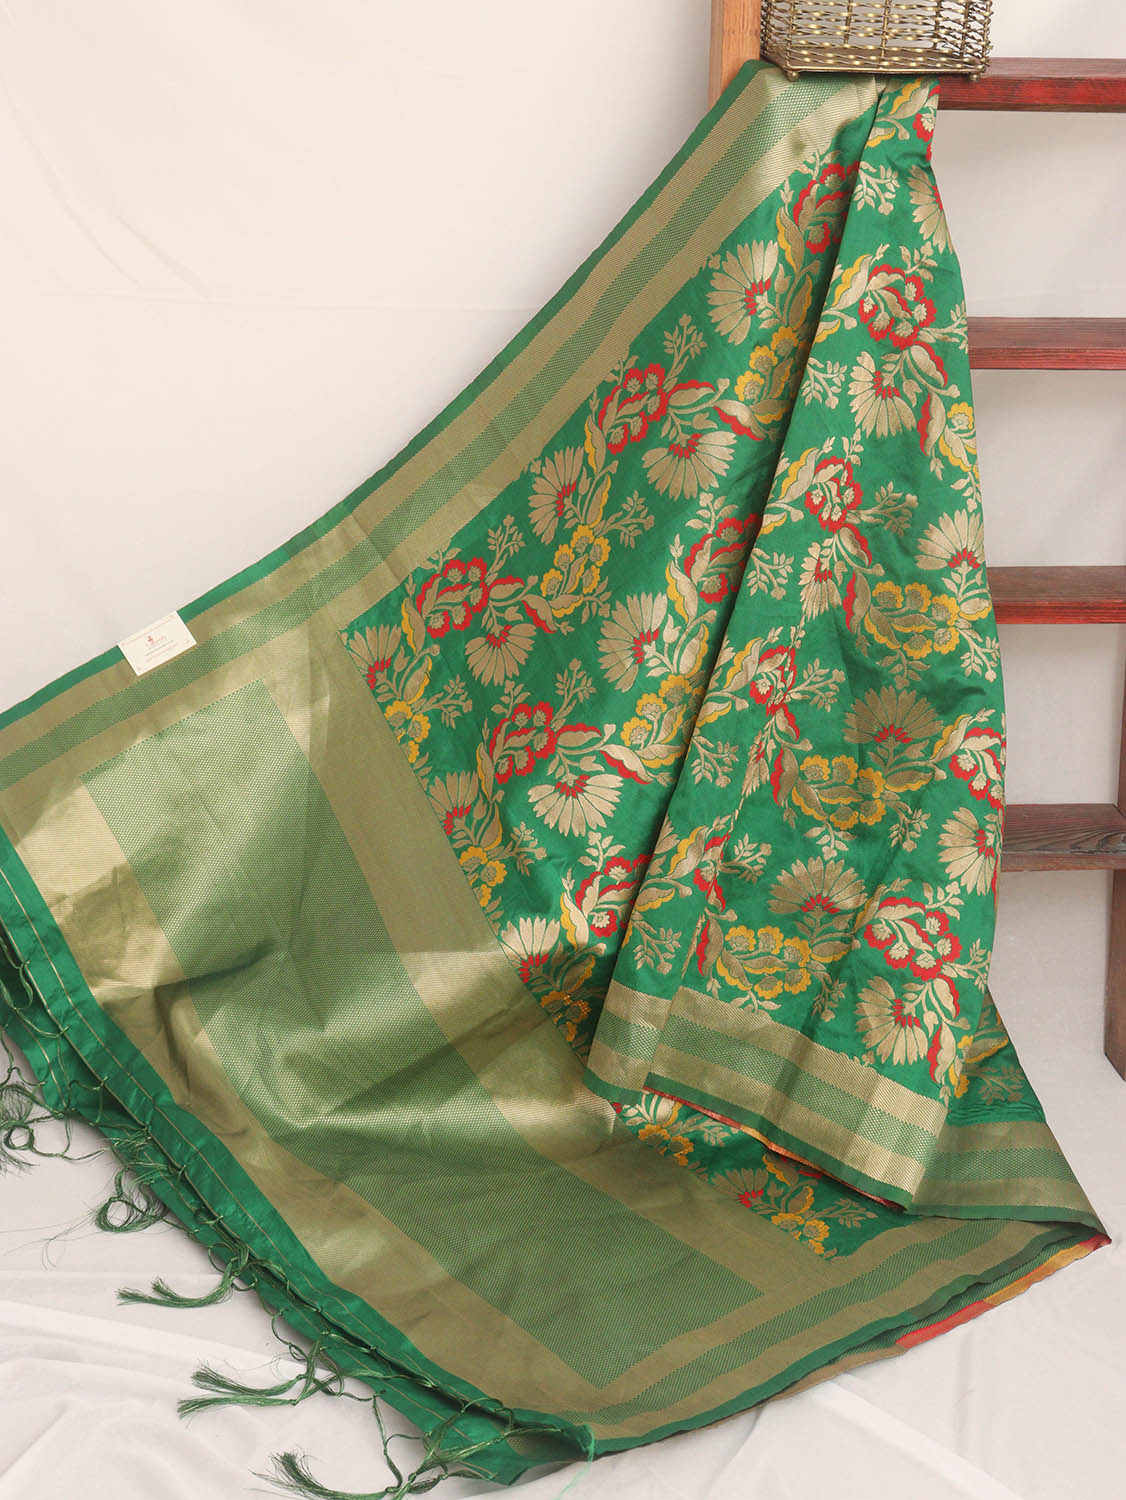 Green Banarasi Silk Meenakari Dupatta